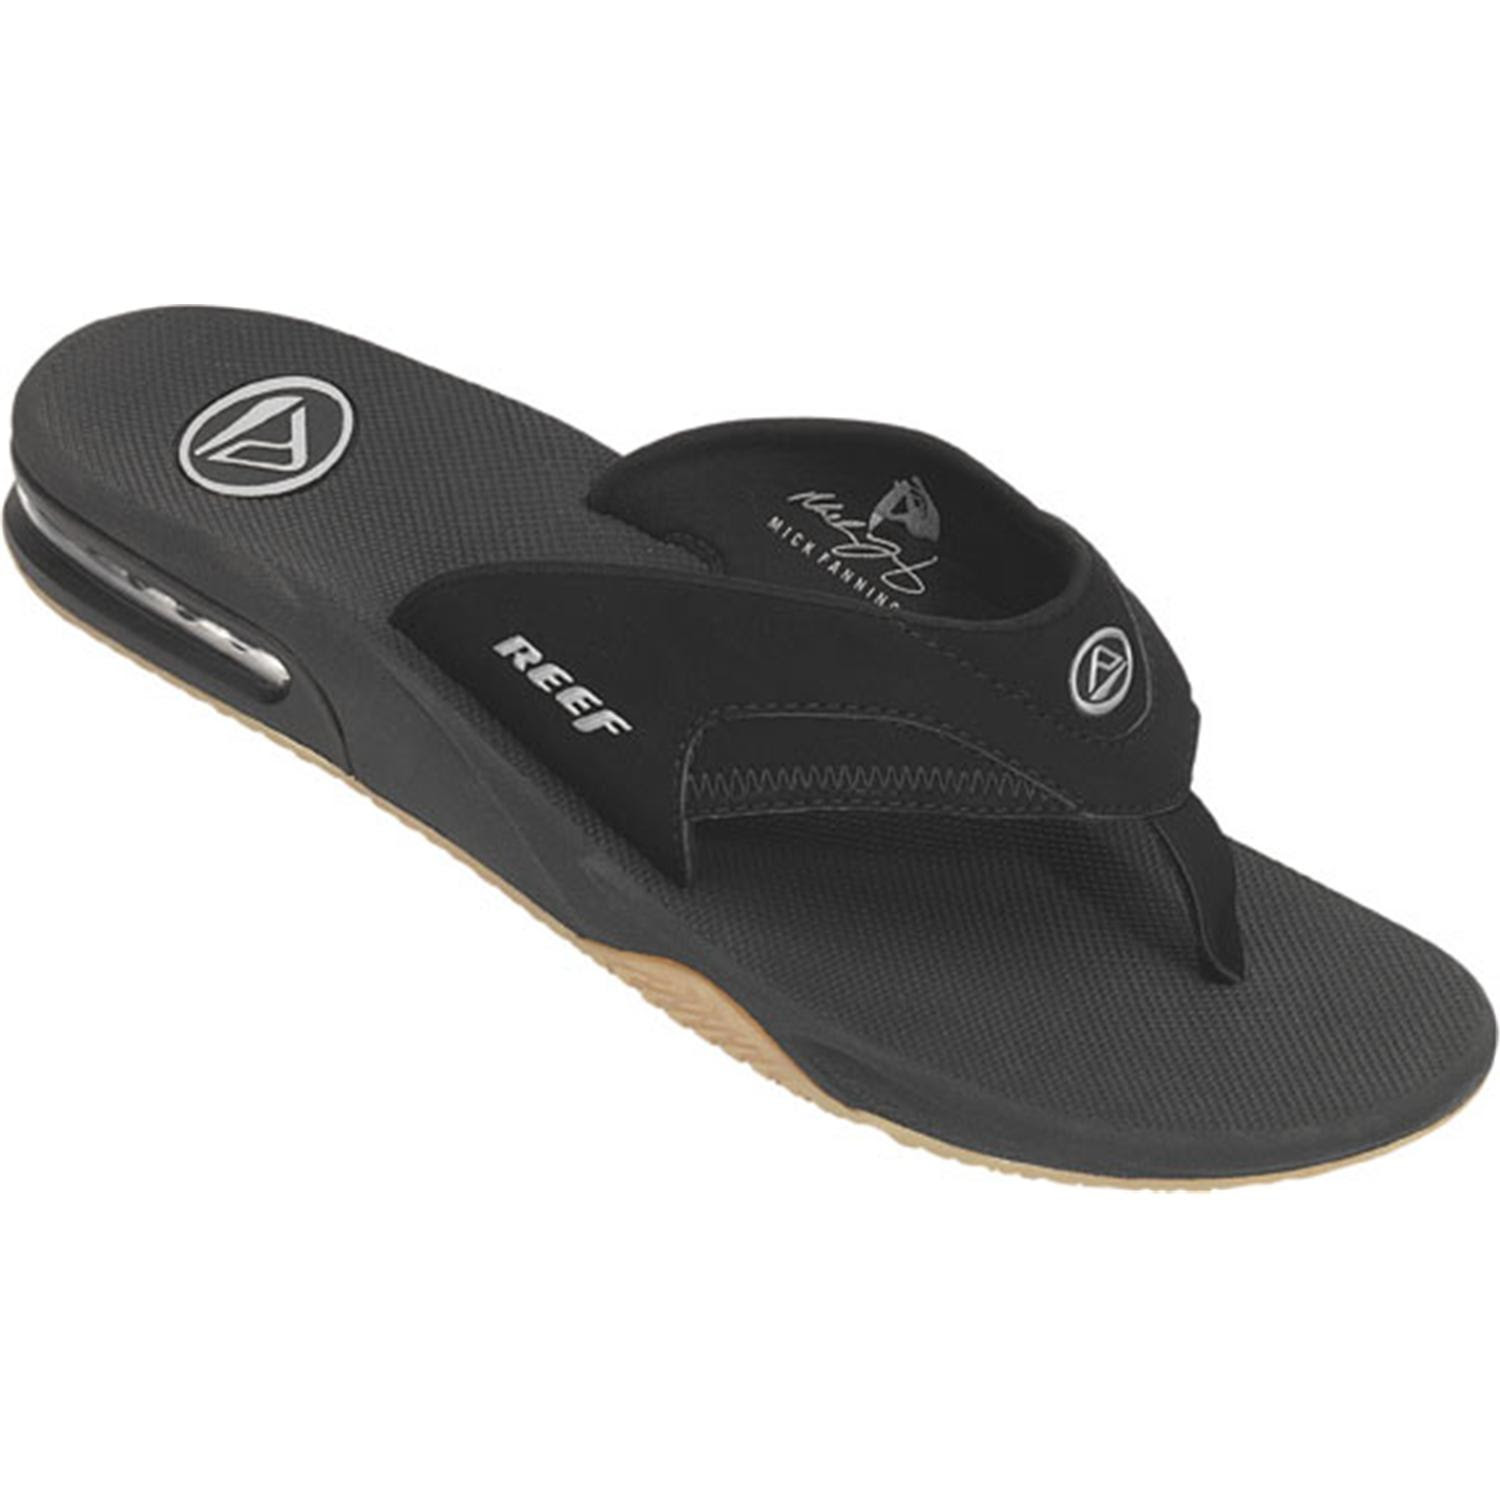 Beach Sandals: Reef Sandals Warranty